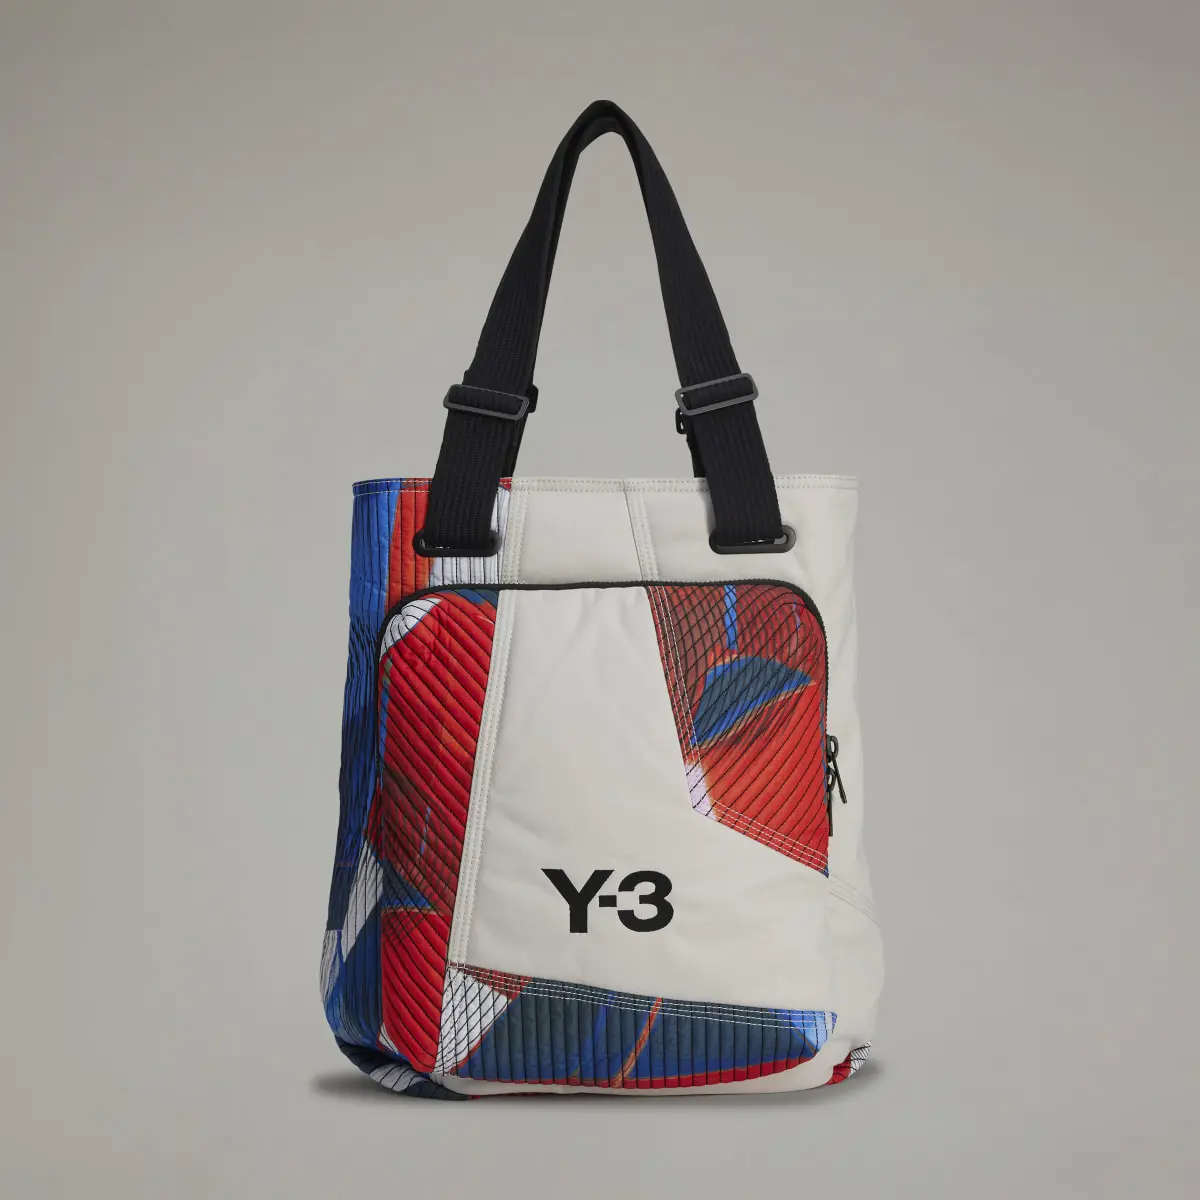 Adidas Y-3 Allover-Print Tote Bag. 2